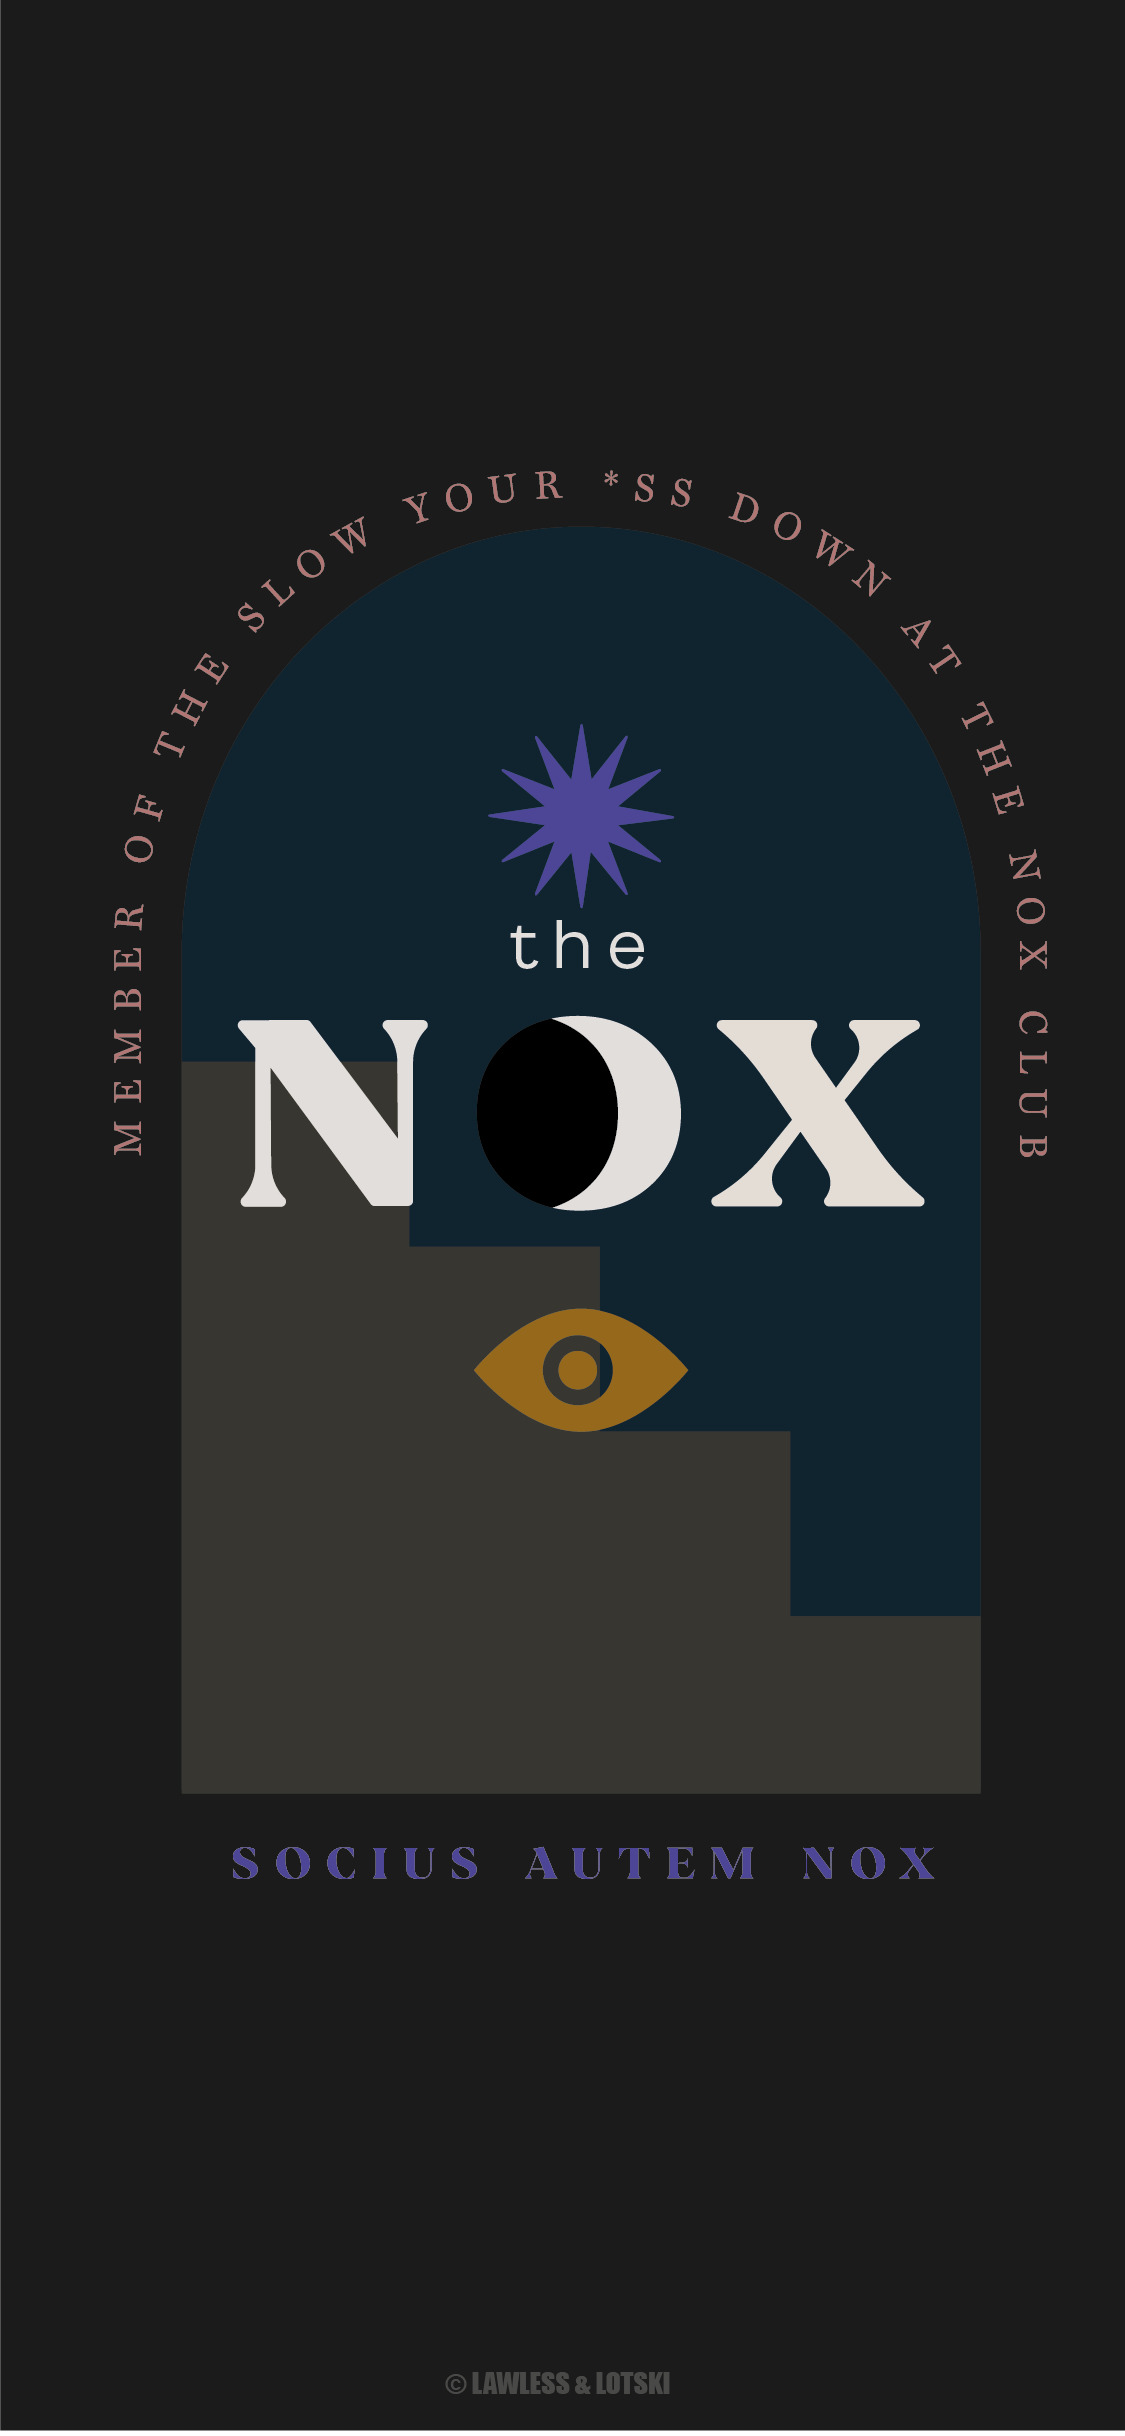 The Nox Hotel